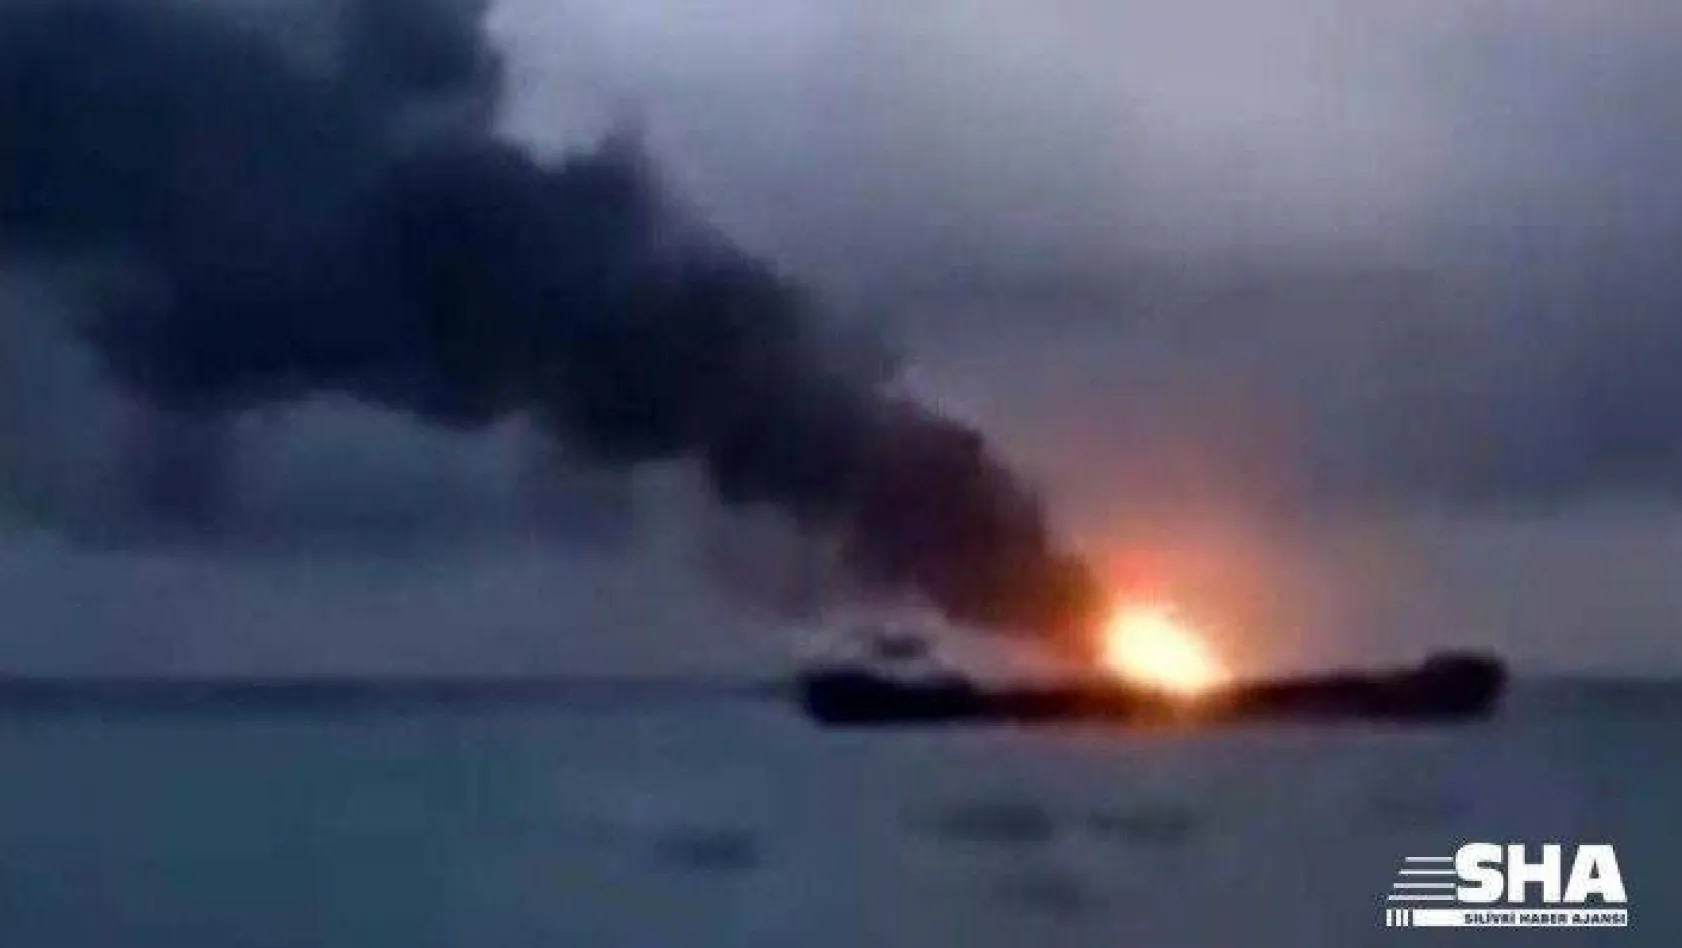 20 kişinin öldüğü gemi yangınında sanıklar hakim karşısına çıktı